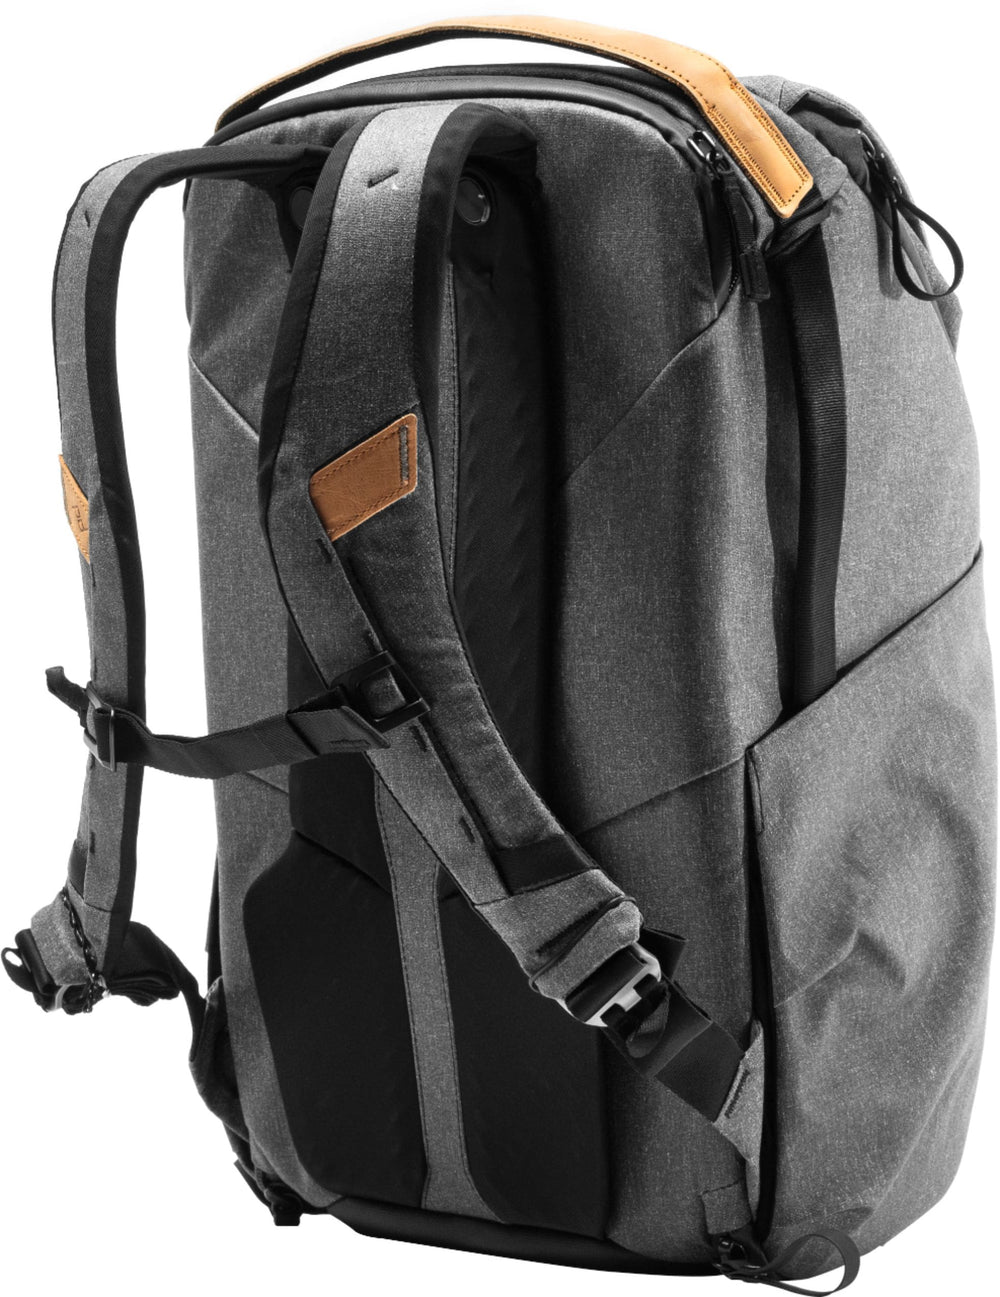 Peak Design - Everyday Backpack V2 30L - Charcoal_1